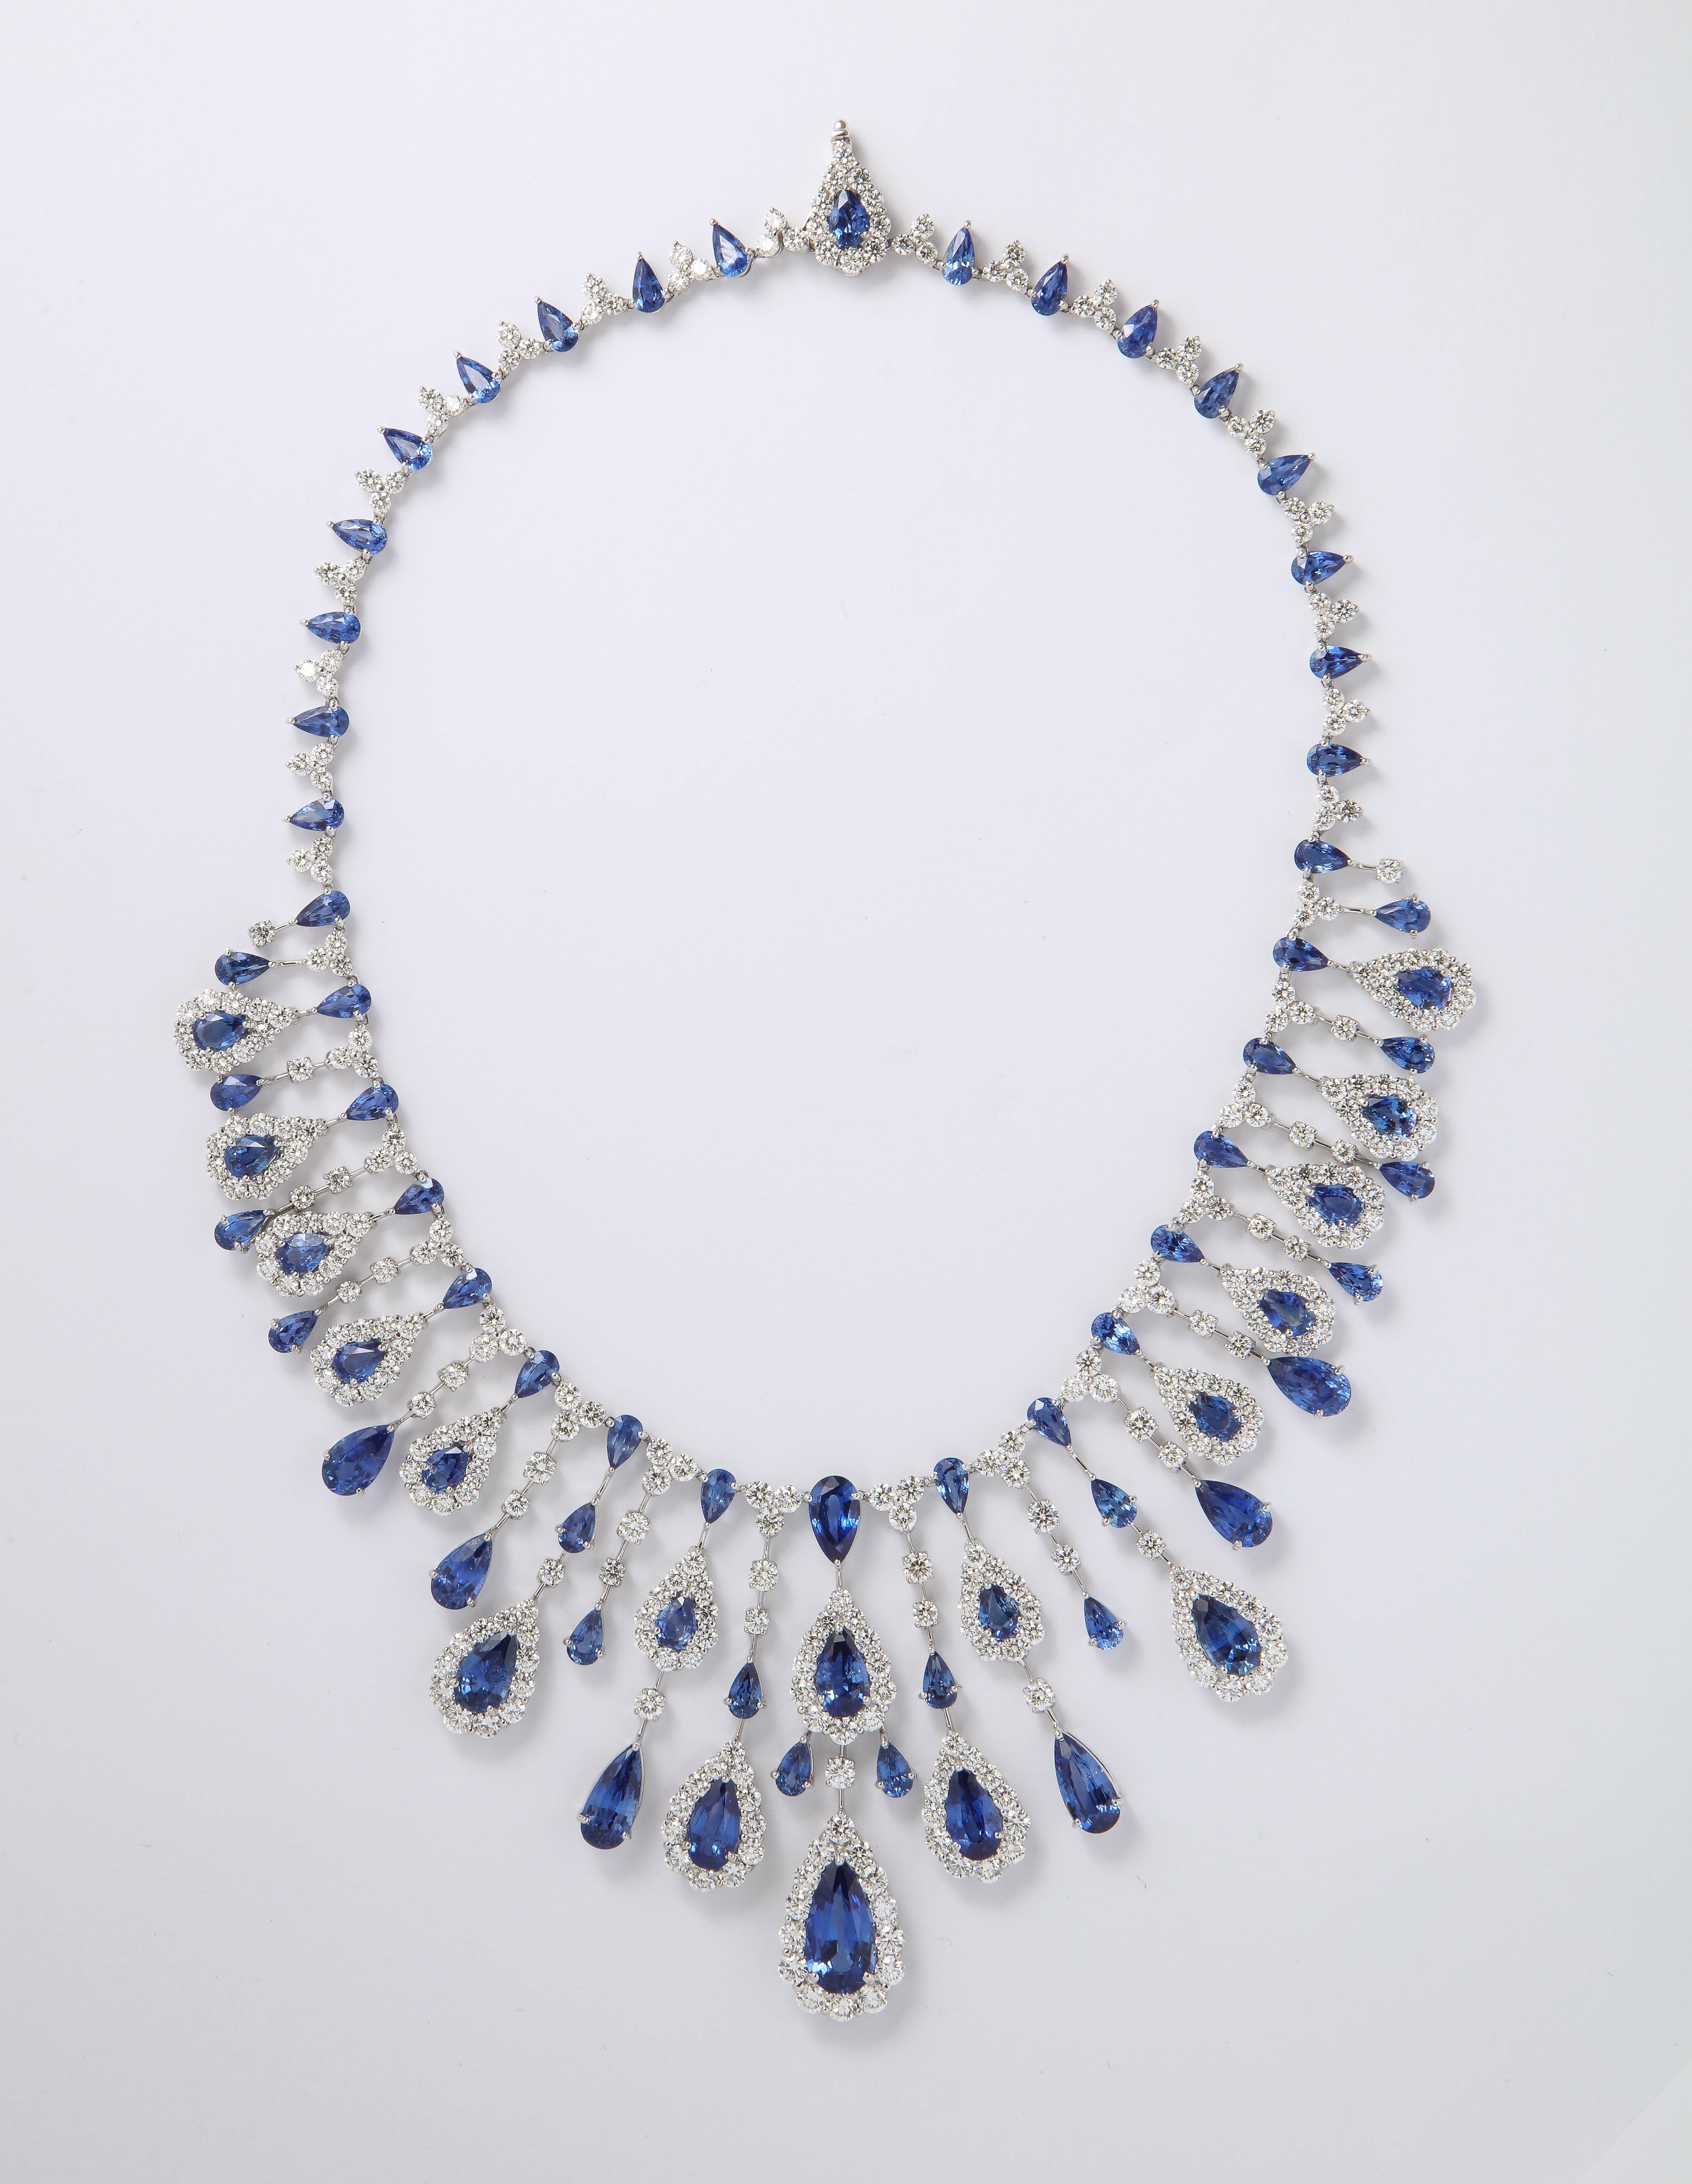 
Ein GRAND Stück. 

77,40 Karat feiner blauer Ceylon-Saphire
36.01 Karat weiße Diamanten im Brillantschliff. 

18k Weißgold 

2,5 Zoll lange Mitte Tropfen, 16,5 Zoll Länge, die angepasst werden kann. 